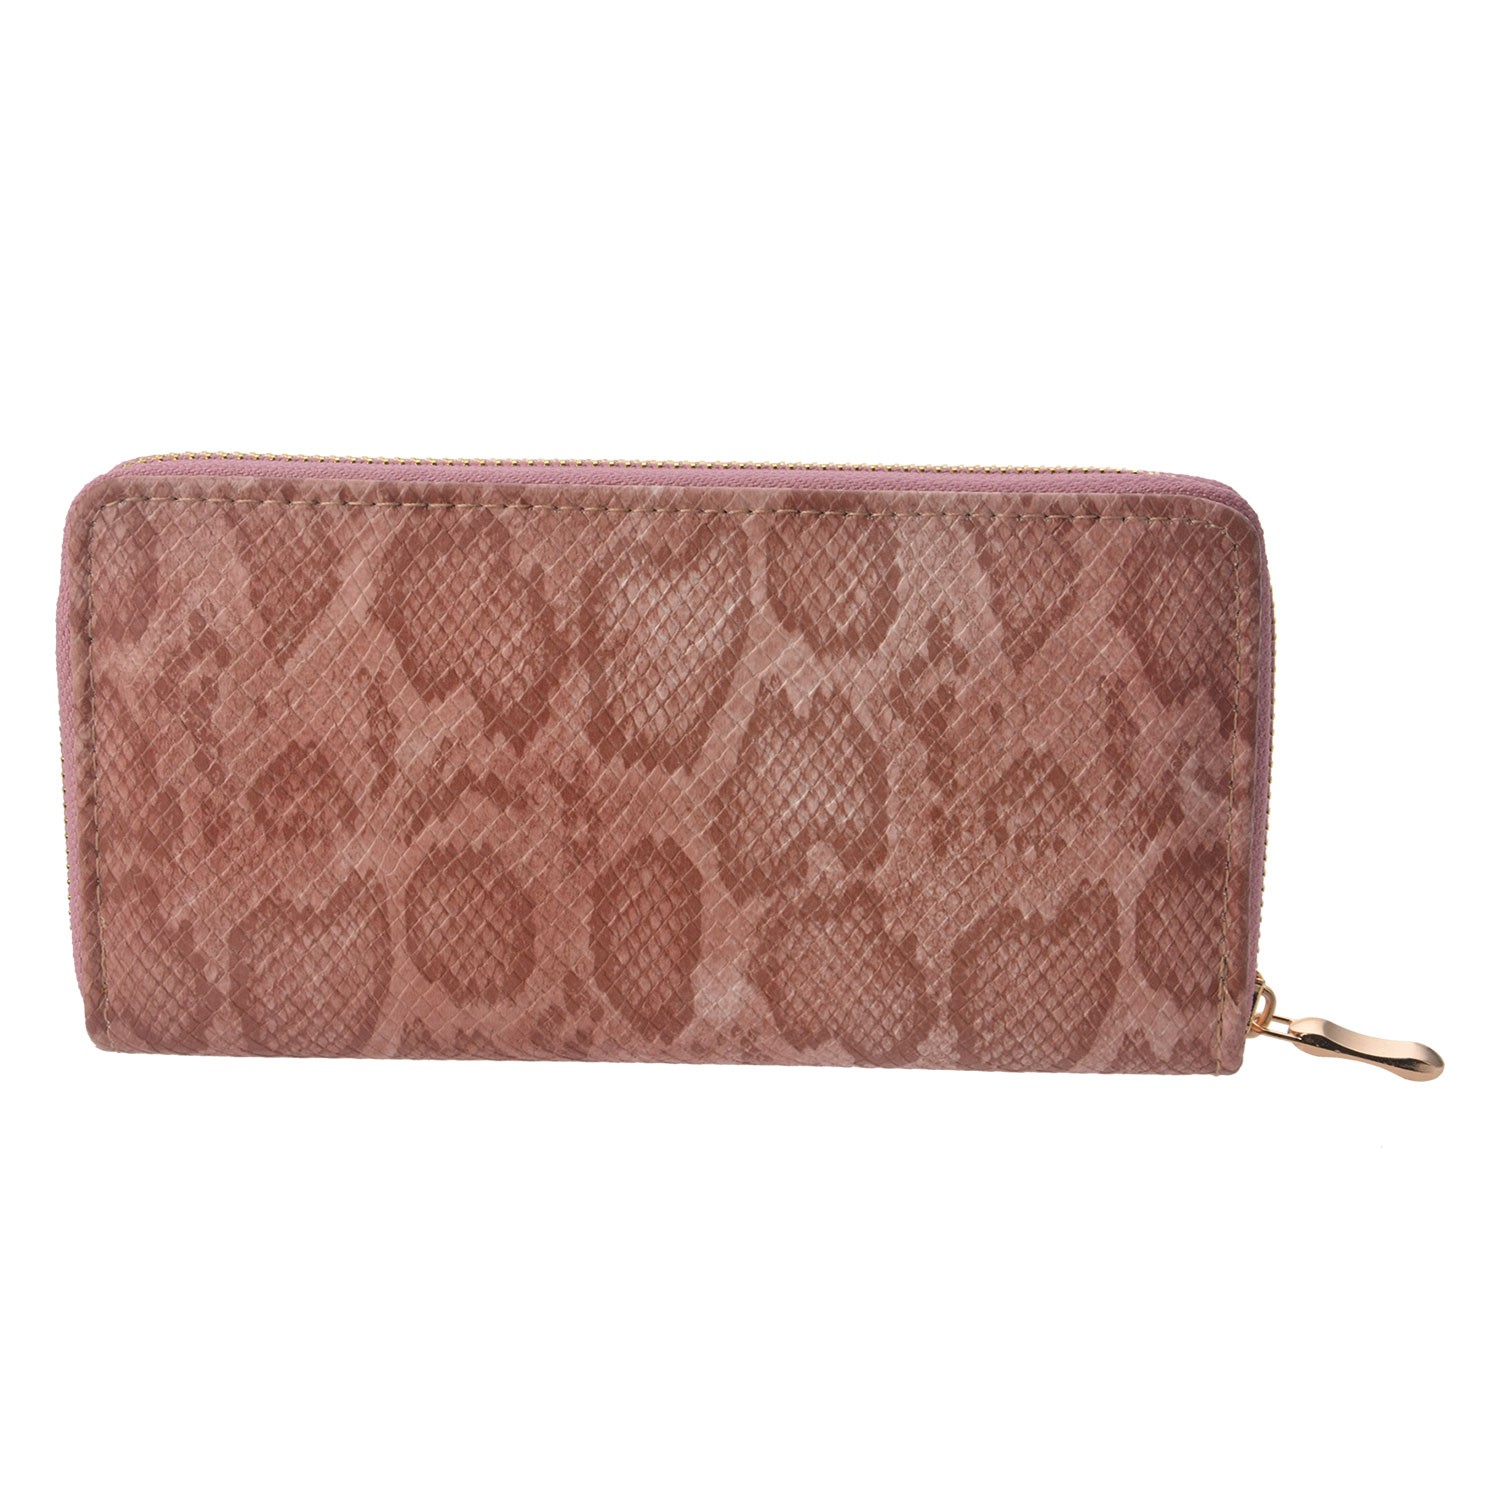 Středně velká peněženka růžovo hnědé barvy se zapínáním na zip.   19*10 cm Clayre & Eef